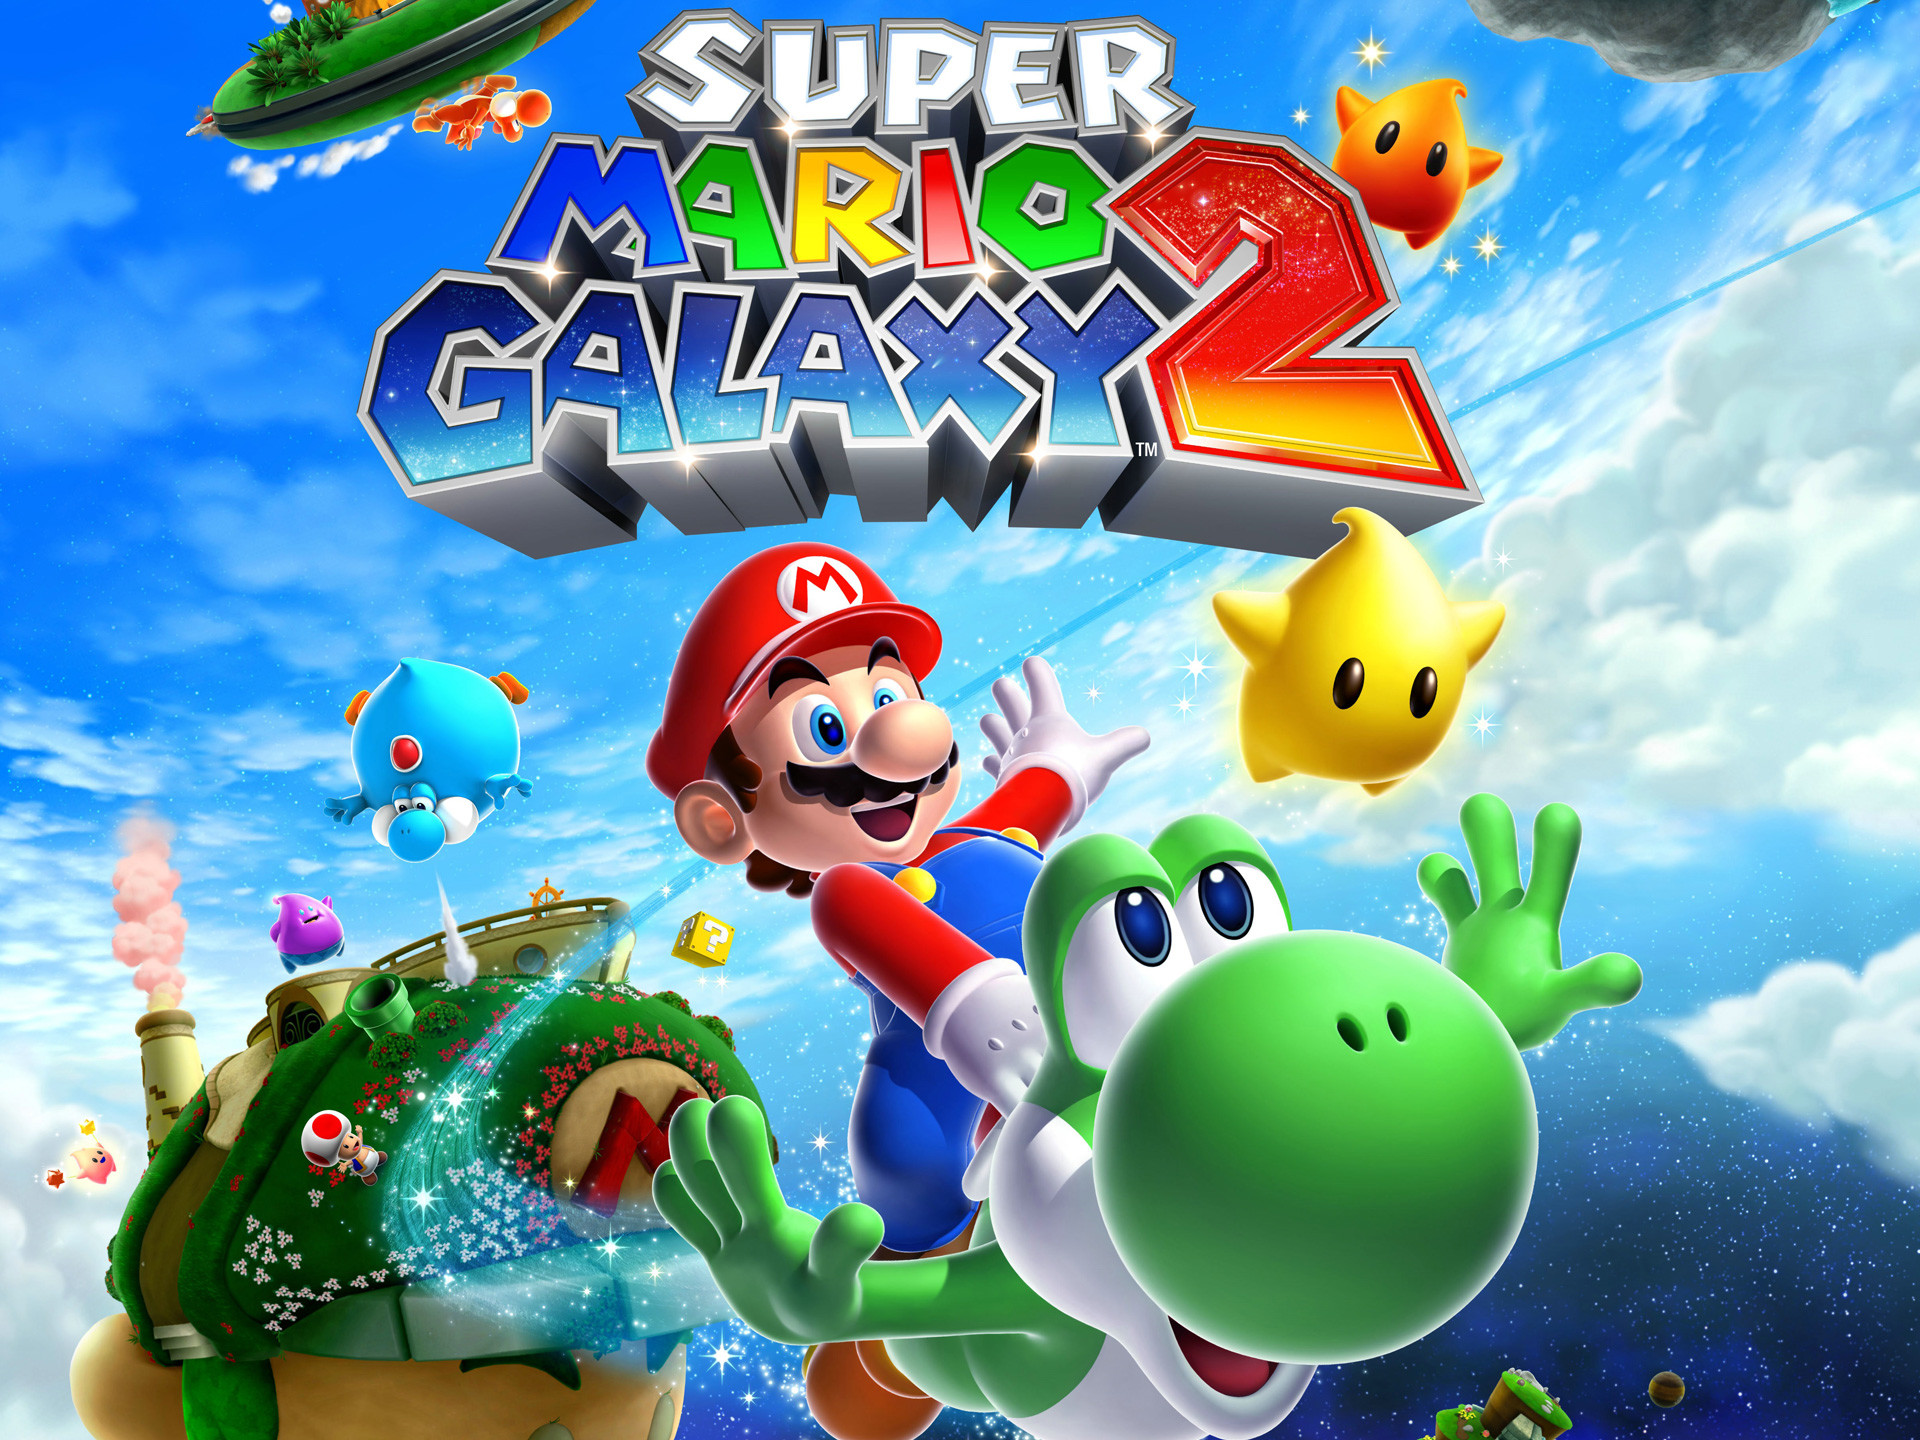 Bạn yêu thích trò chơi Siêu Mario Galaxy 2? Hãy xem hình ảnh này để nhớ lại những khoảnh khắc đầy thử thách và phấn khích. Siêu Mario chắc chắn sẽ cùng bạn đến với mọi hành tinh xa xôi.